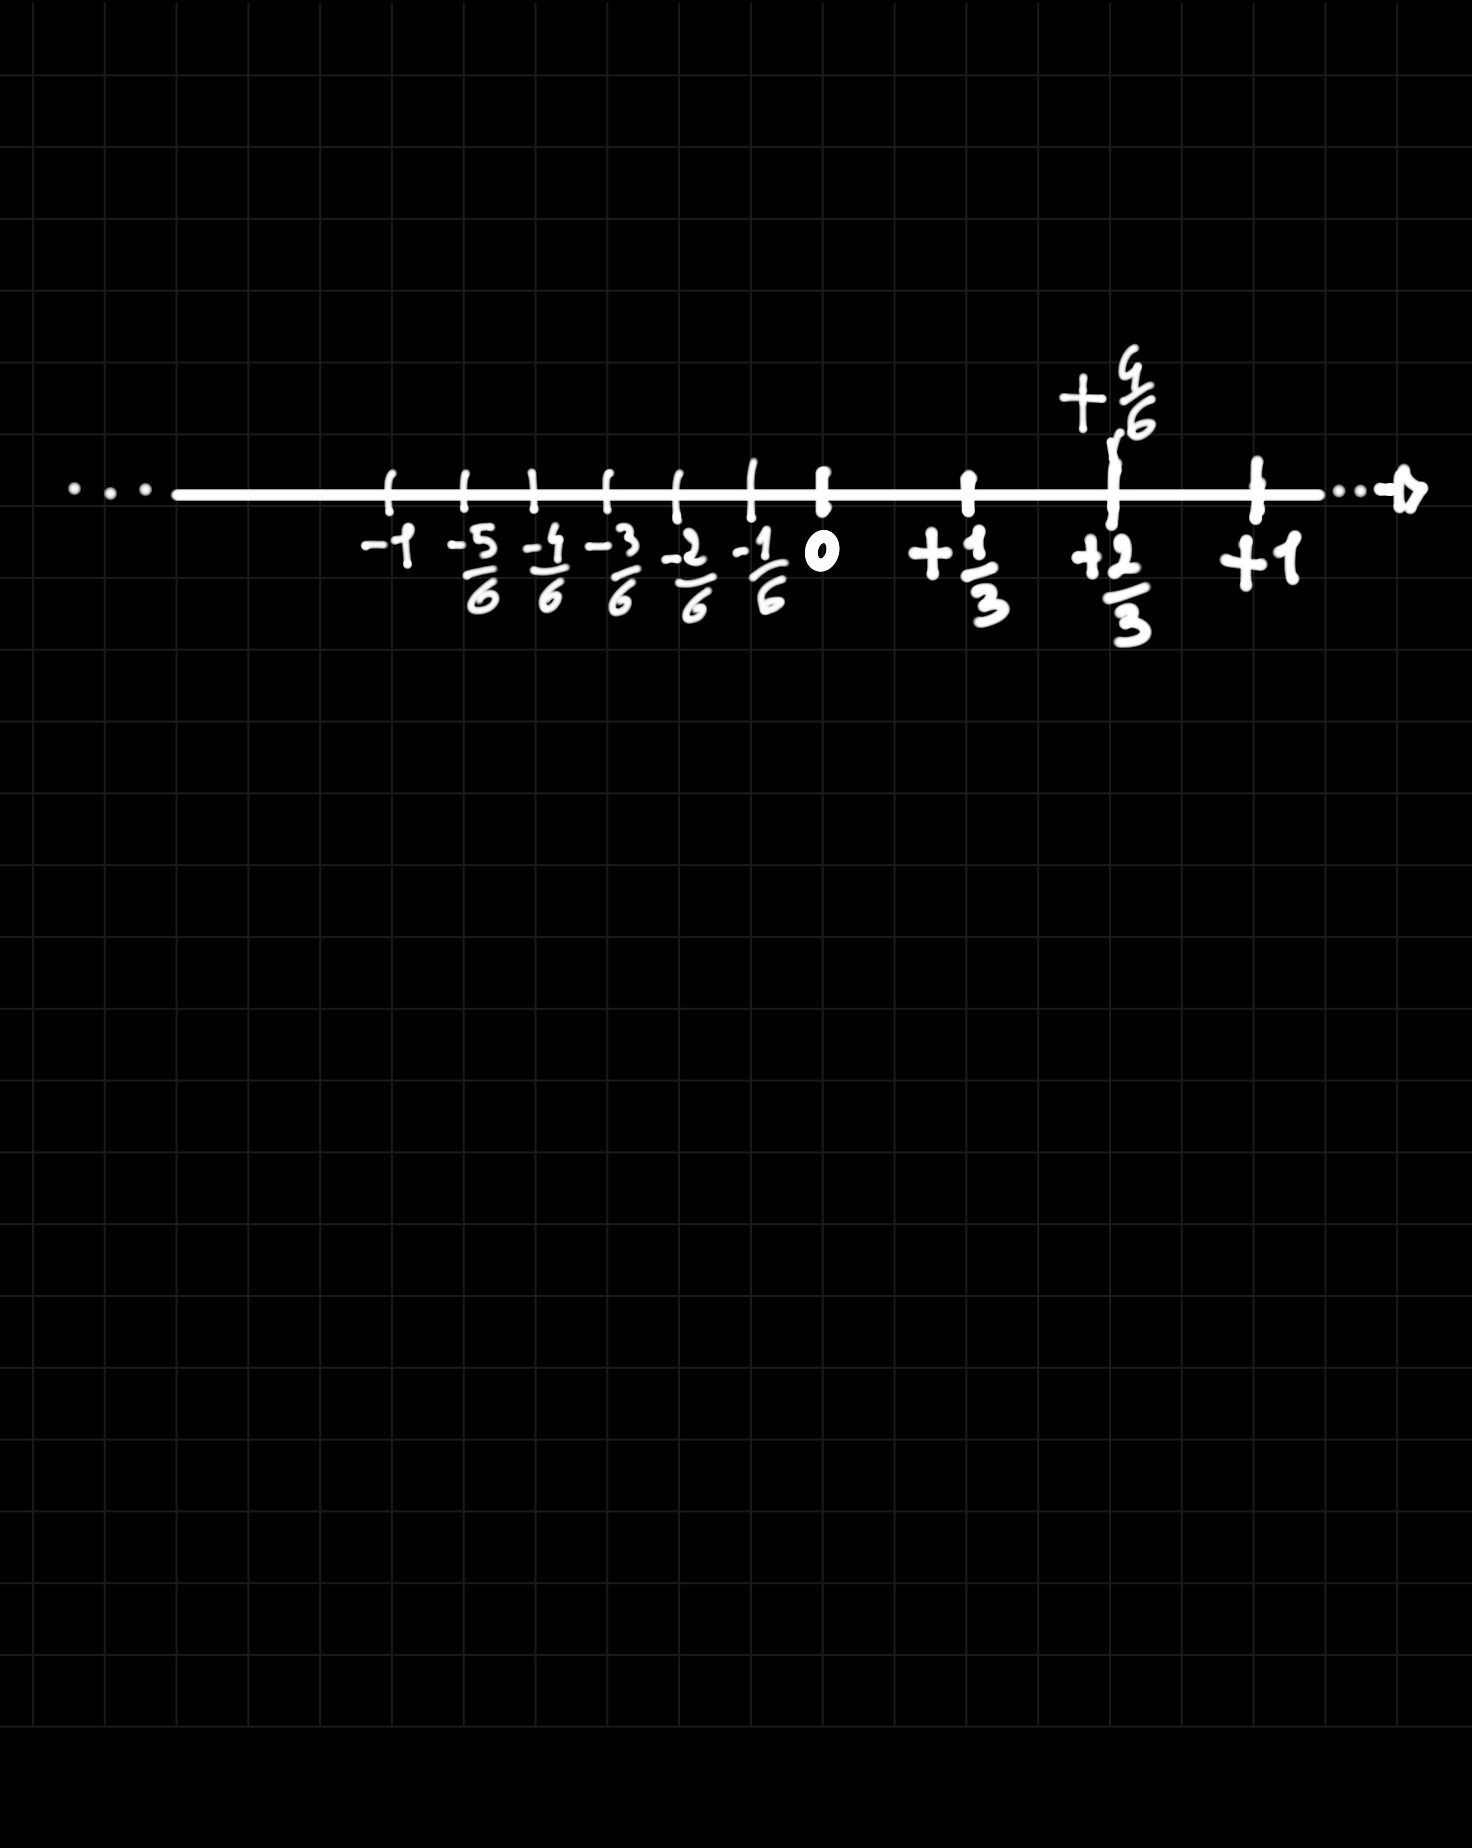 Tutte le frazioni tra loro equivalenti corrispondono allo stesso punto sulla retta.